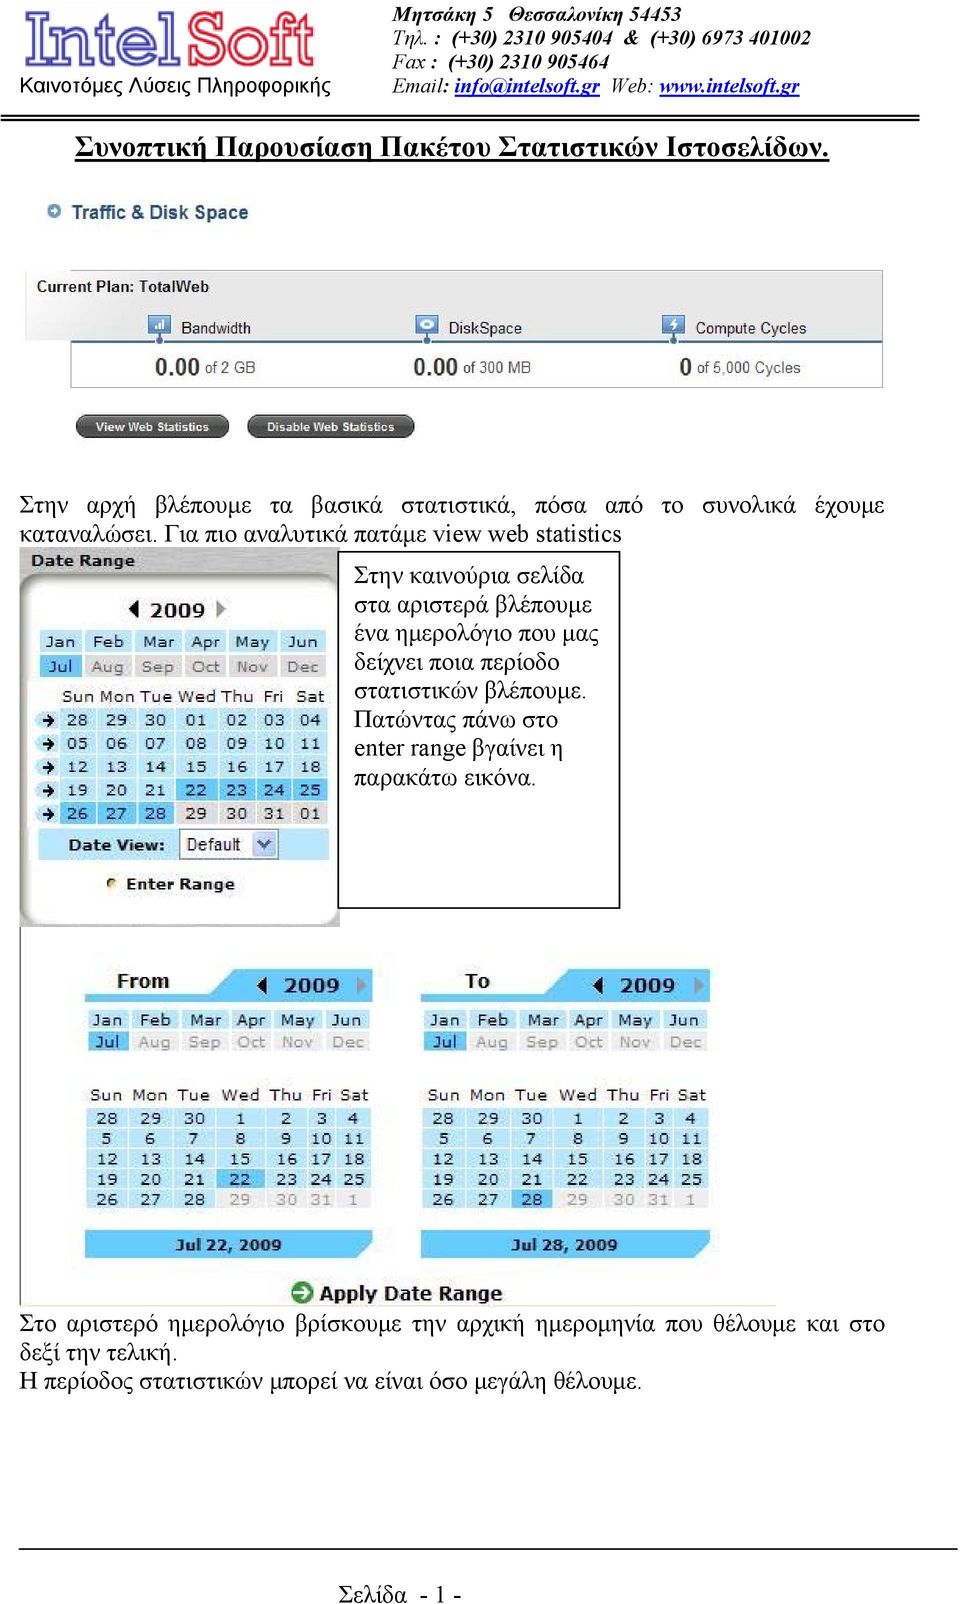 Για πιο αναλυτικά πατάμε view web statistics Στην καινούρια σελίδα στα αριστερά βλέπουμε ένα ημερολόγιο που μας δείχνει ποια